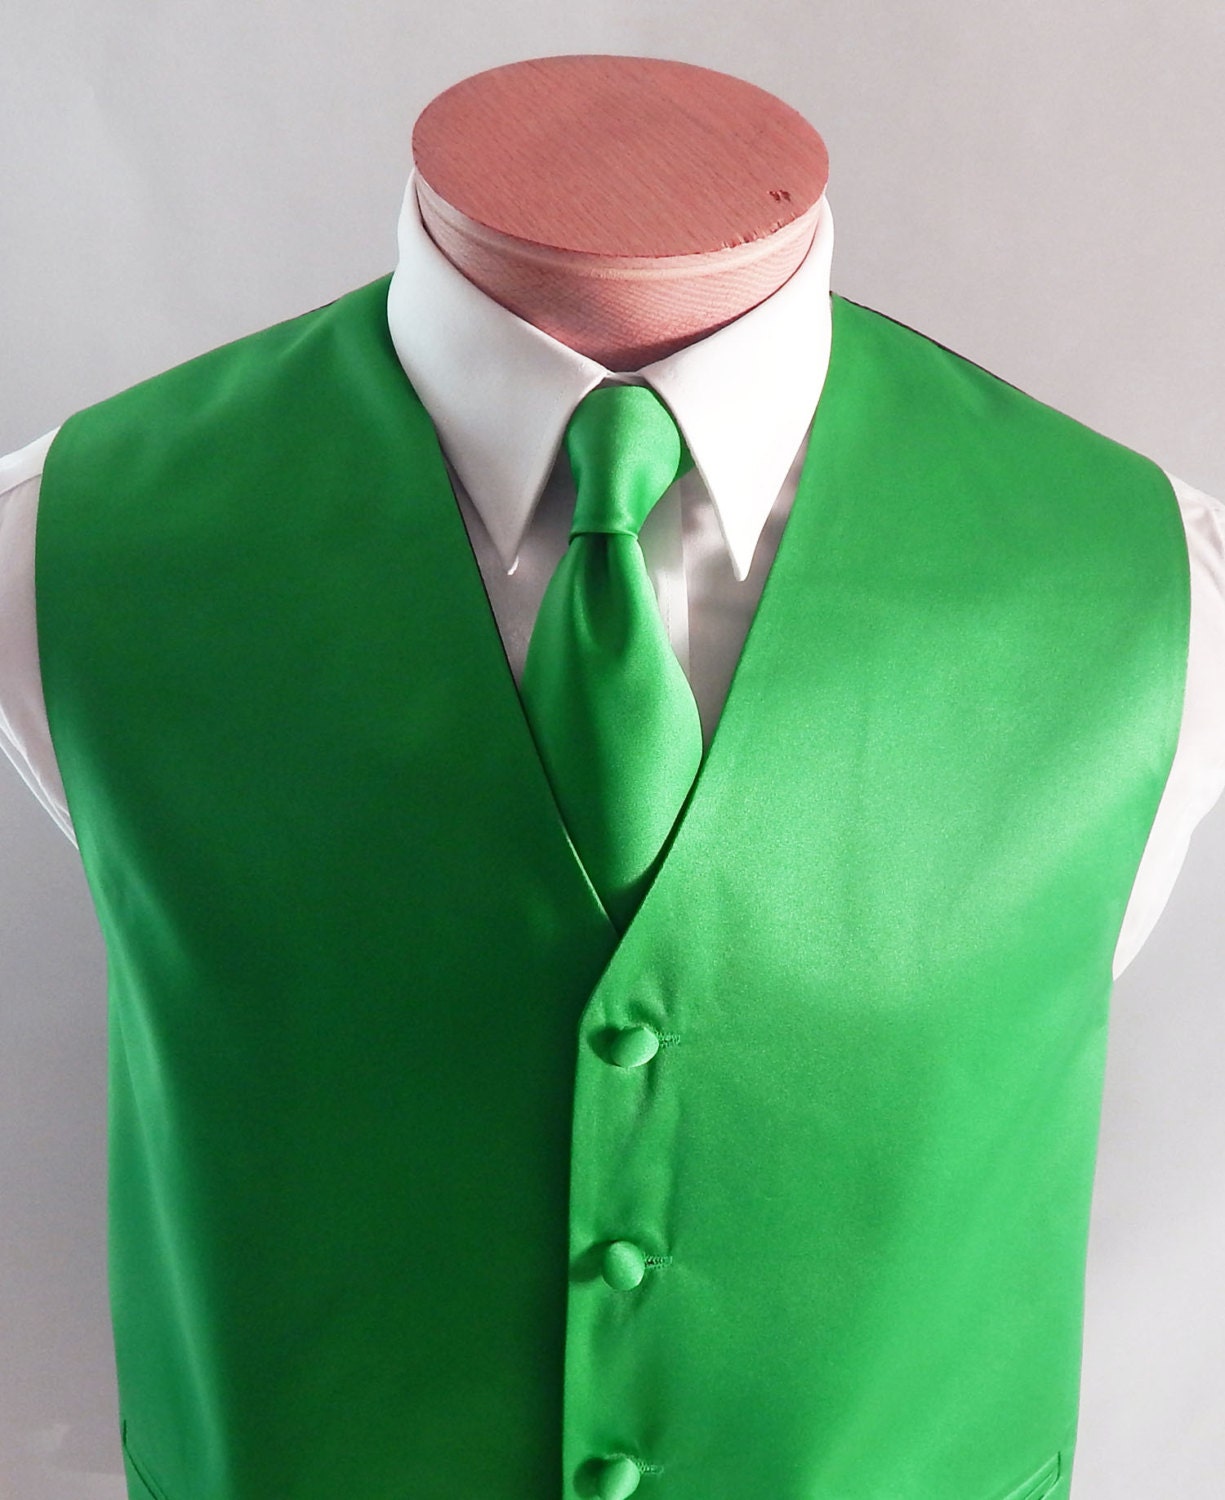 Men's Green Vests